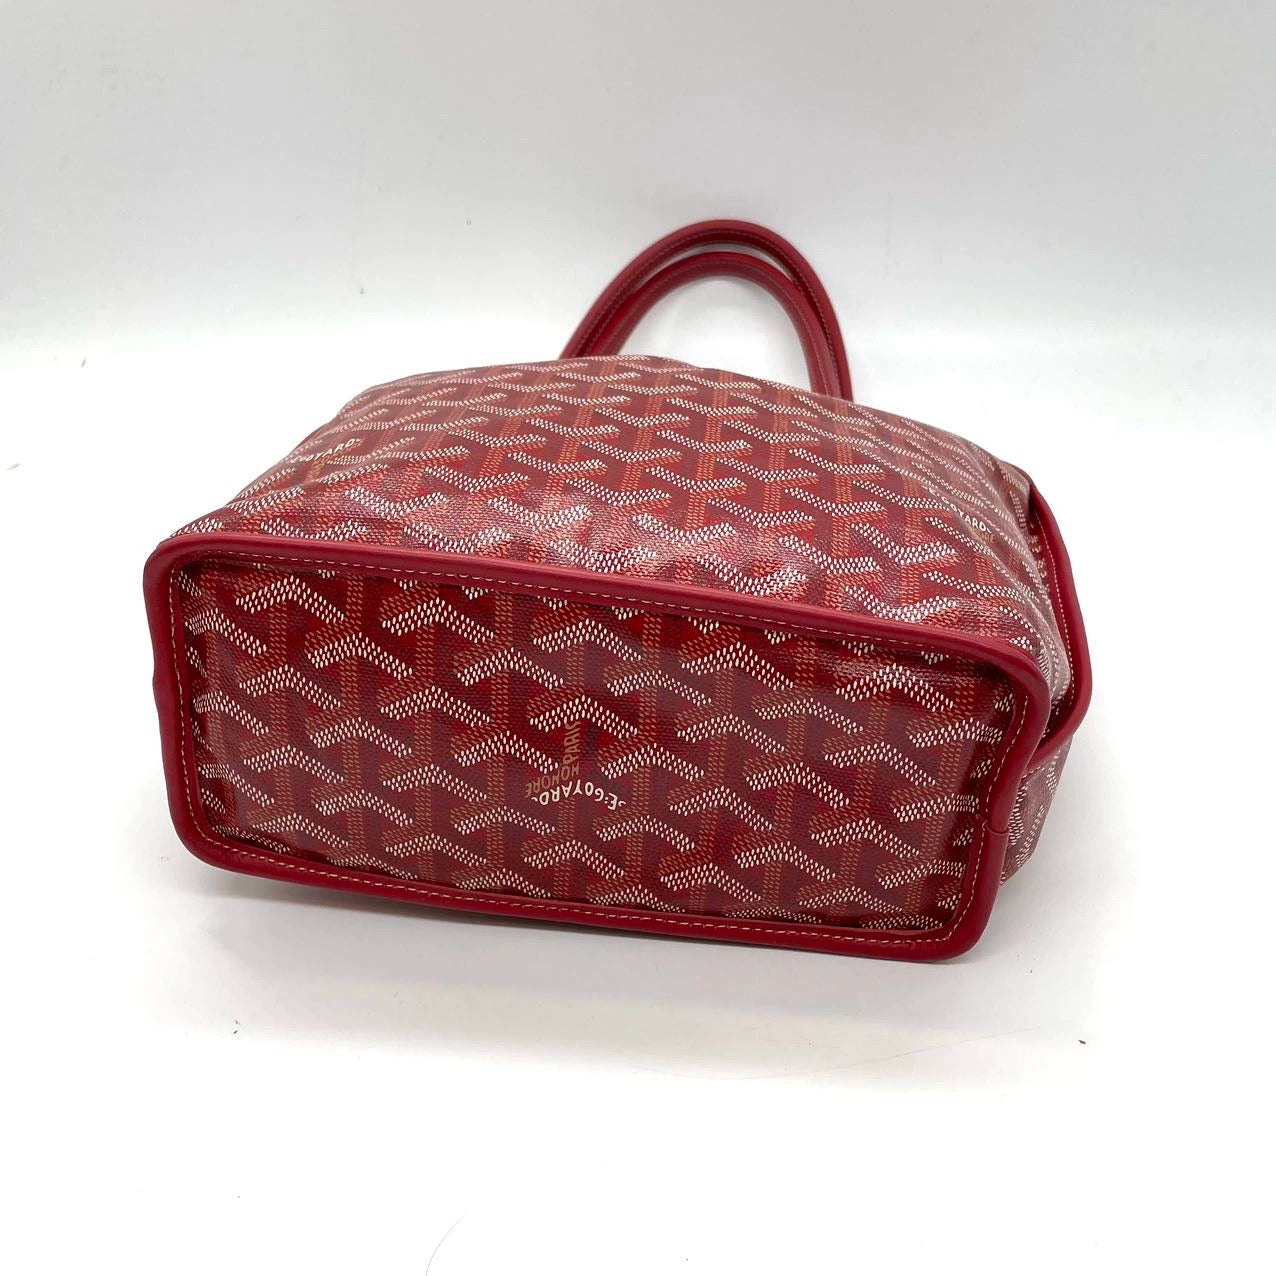 Sold Goyard Anjou Mini Tote Red/Maroon/Burgundy leather